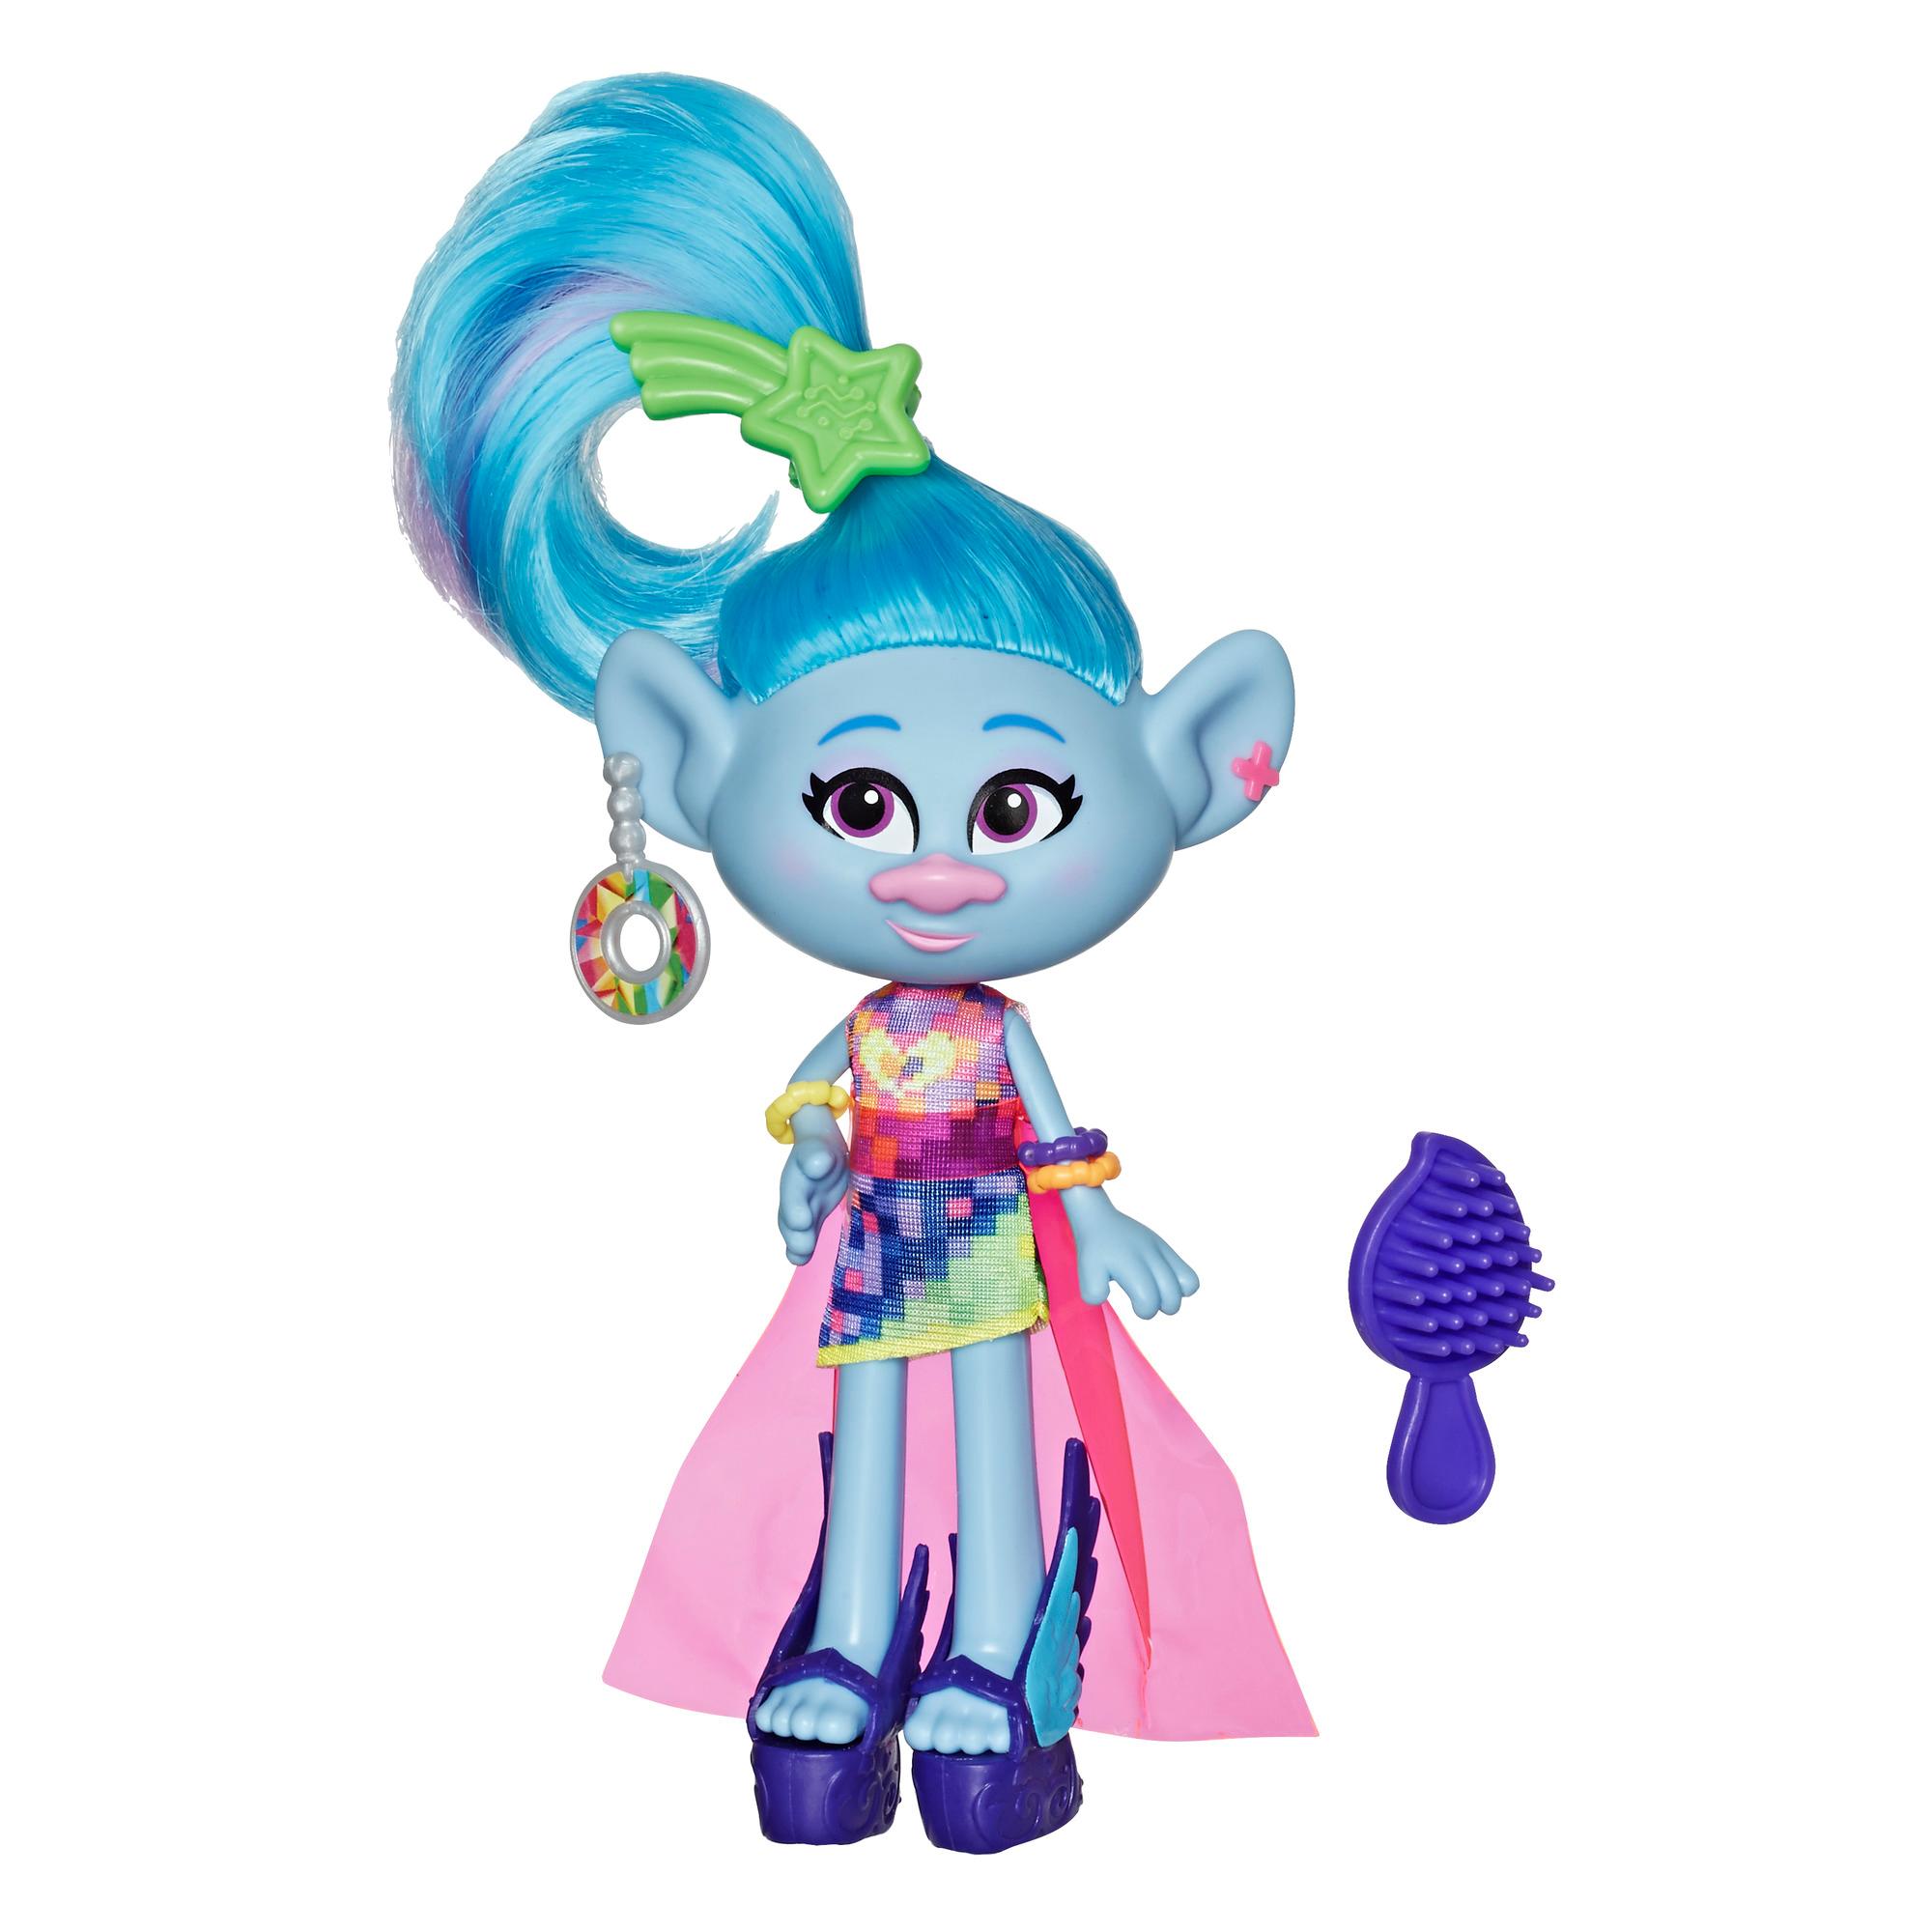 DreamWorks Trolls Chenille Glamour com vestido, sapato e outros acessórios, com inspiração no filme Trolls World Tour, brinquedo para crianças